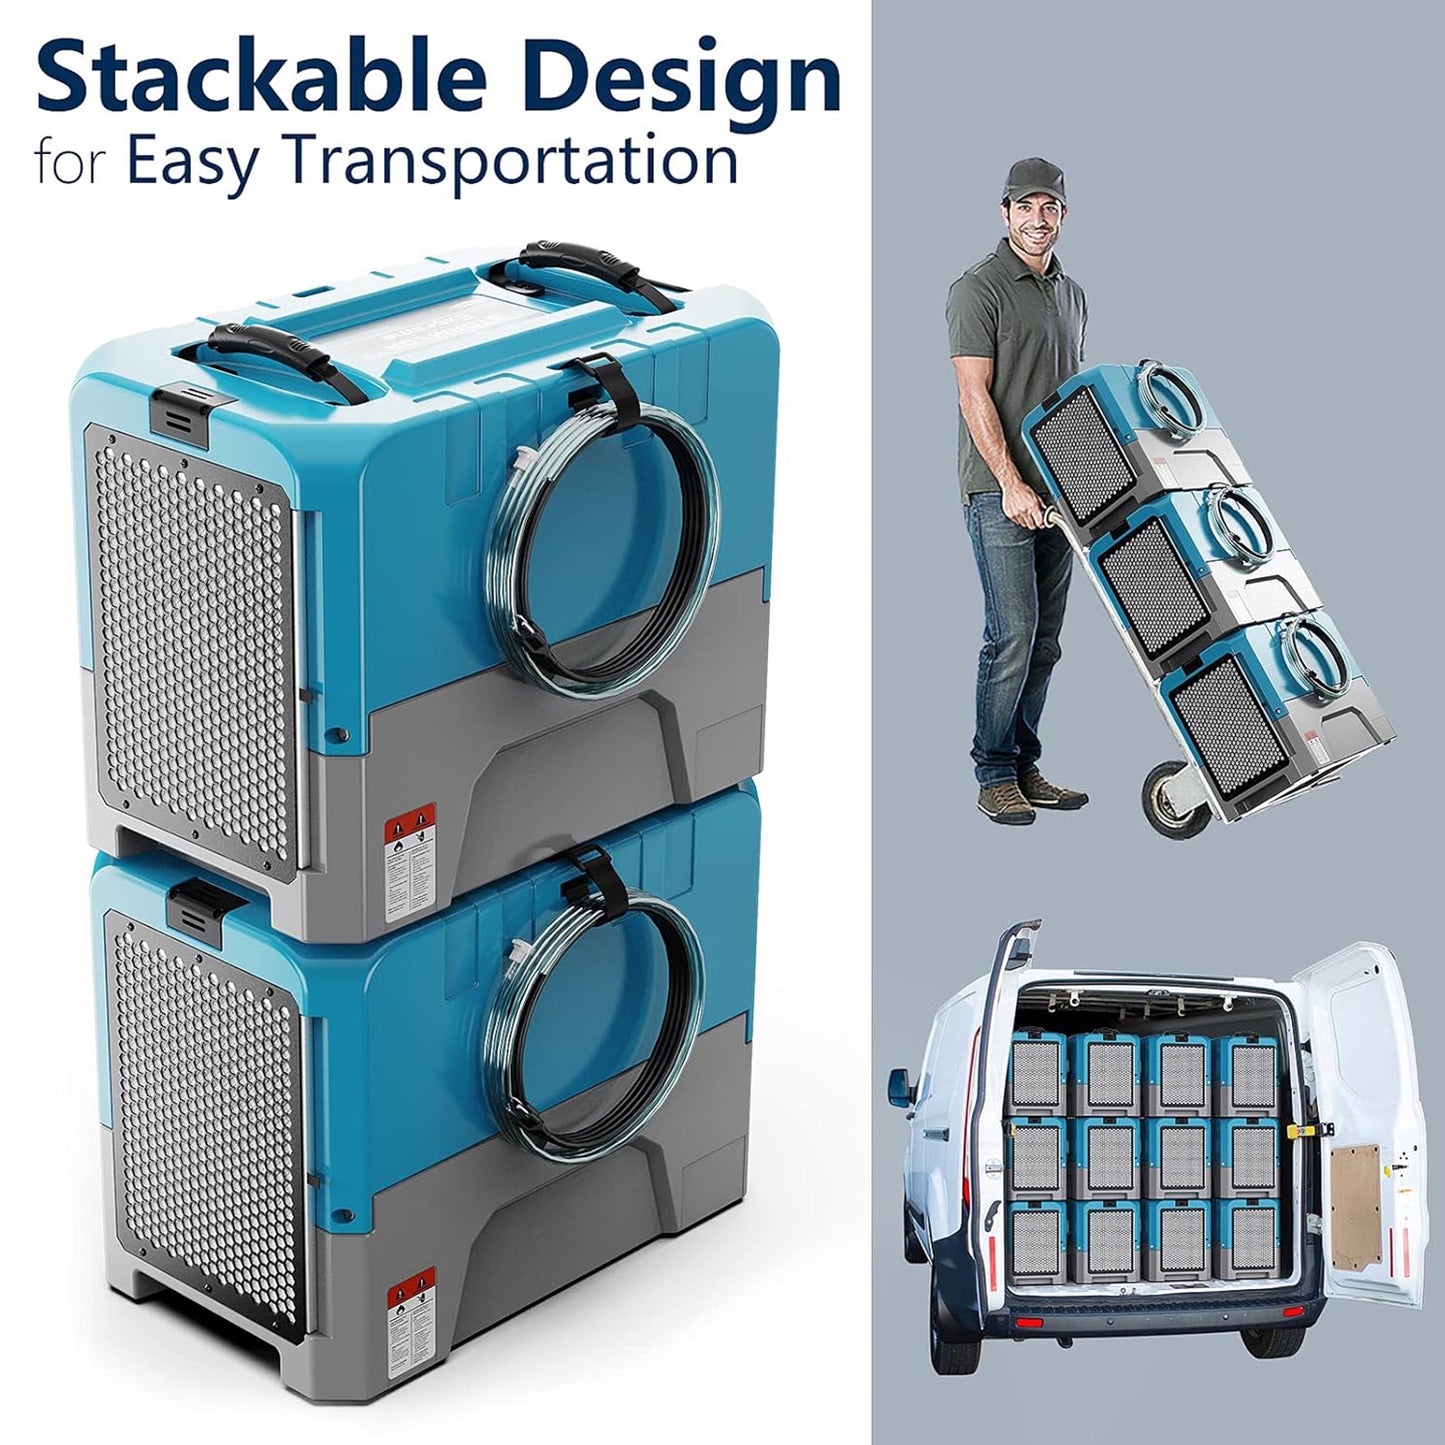 Stackable design for easy transportation